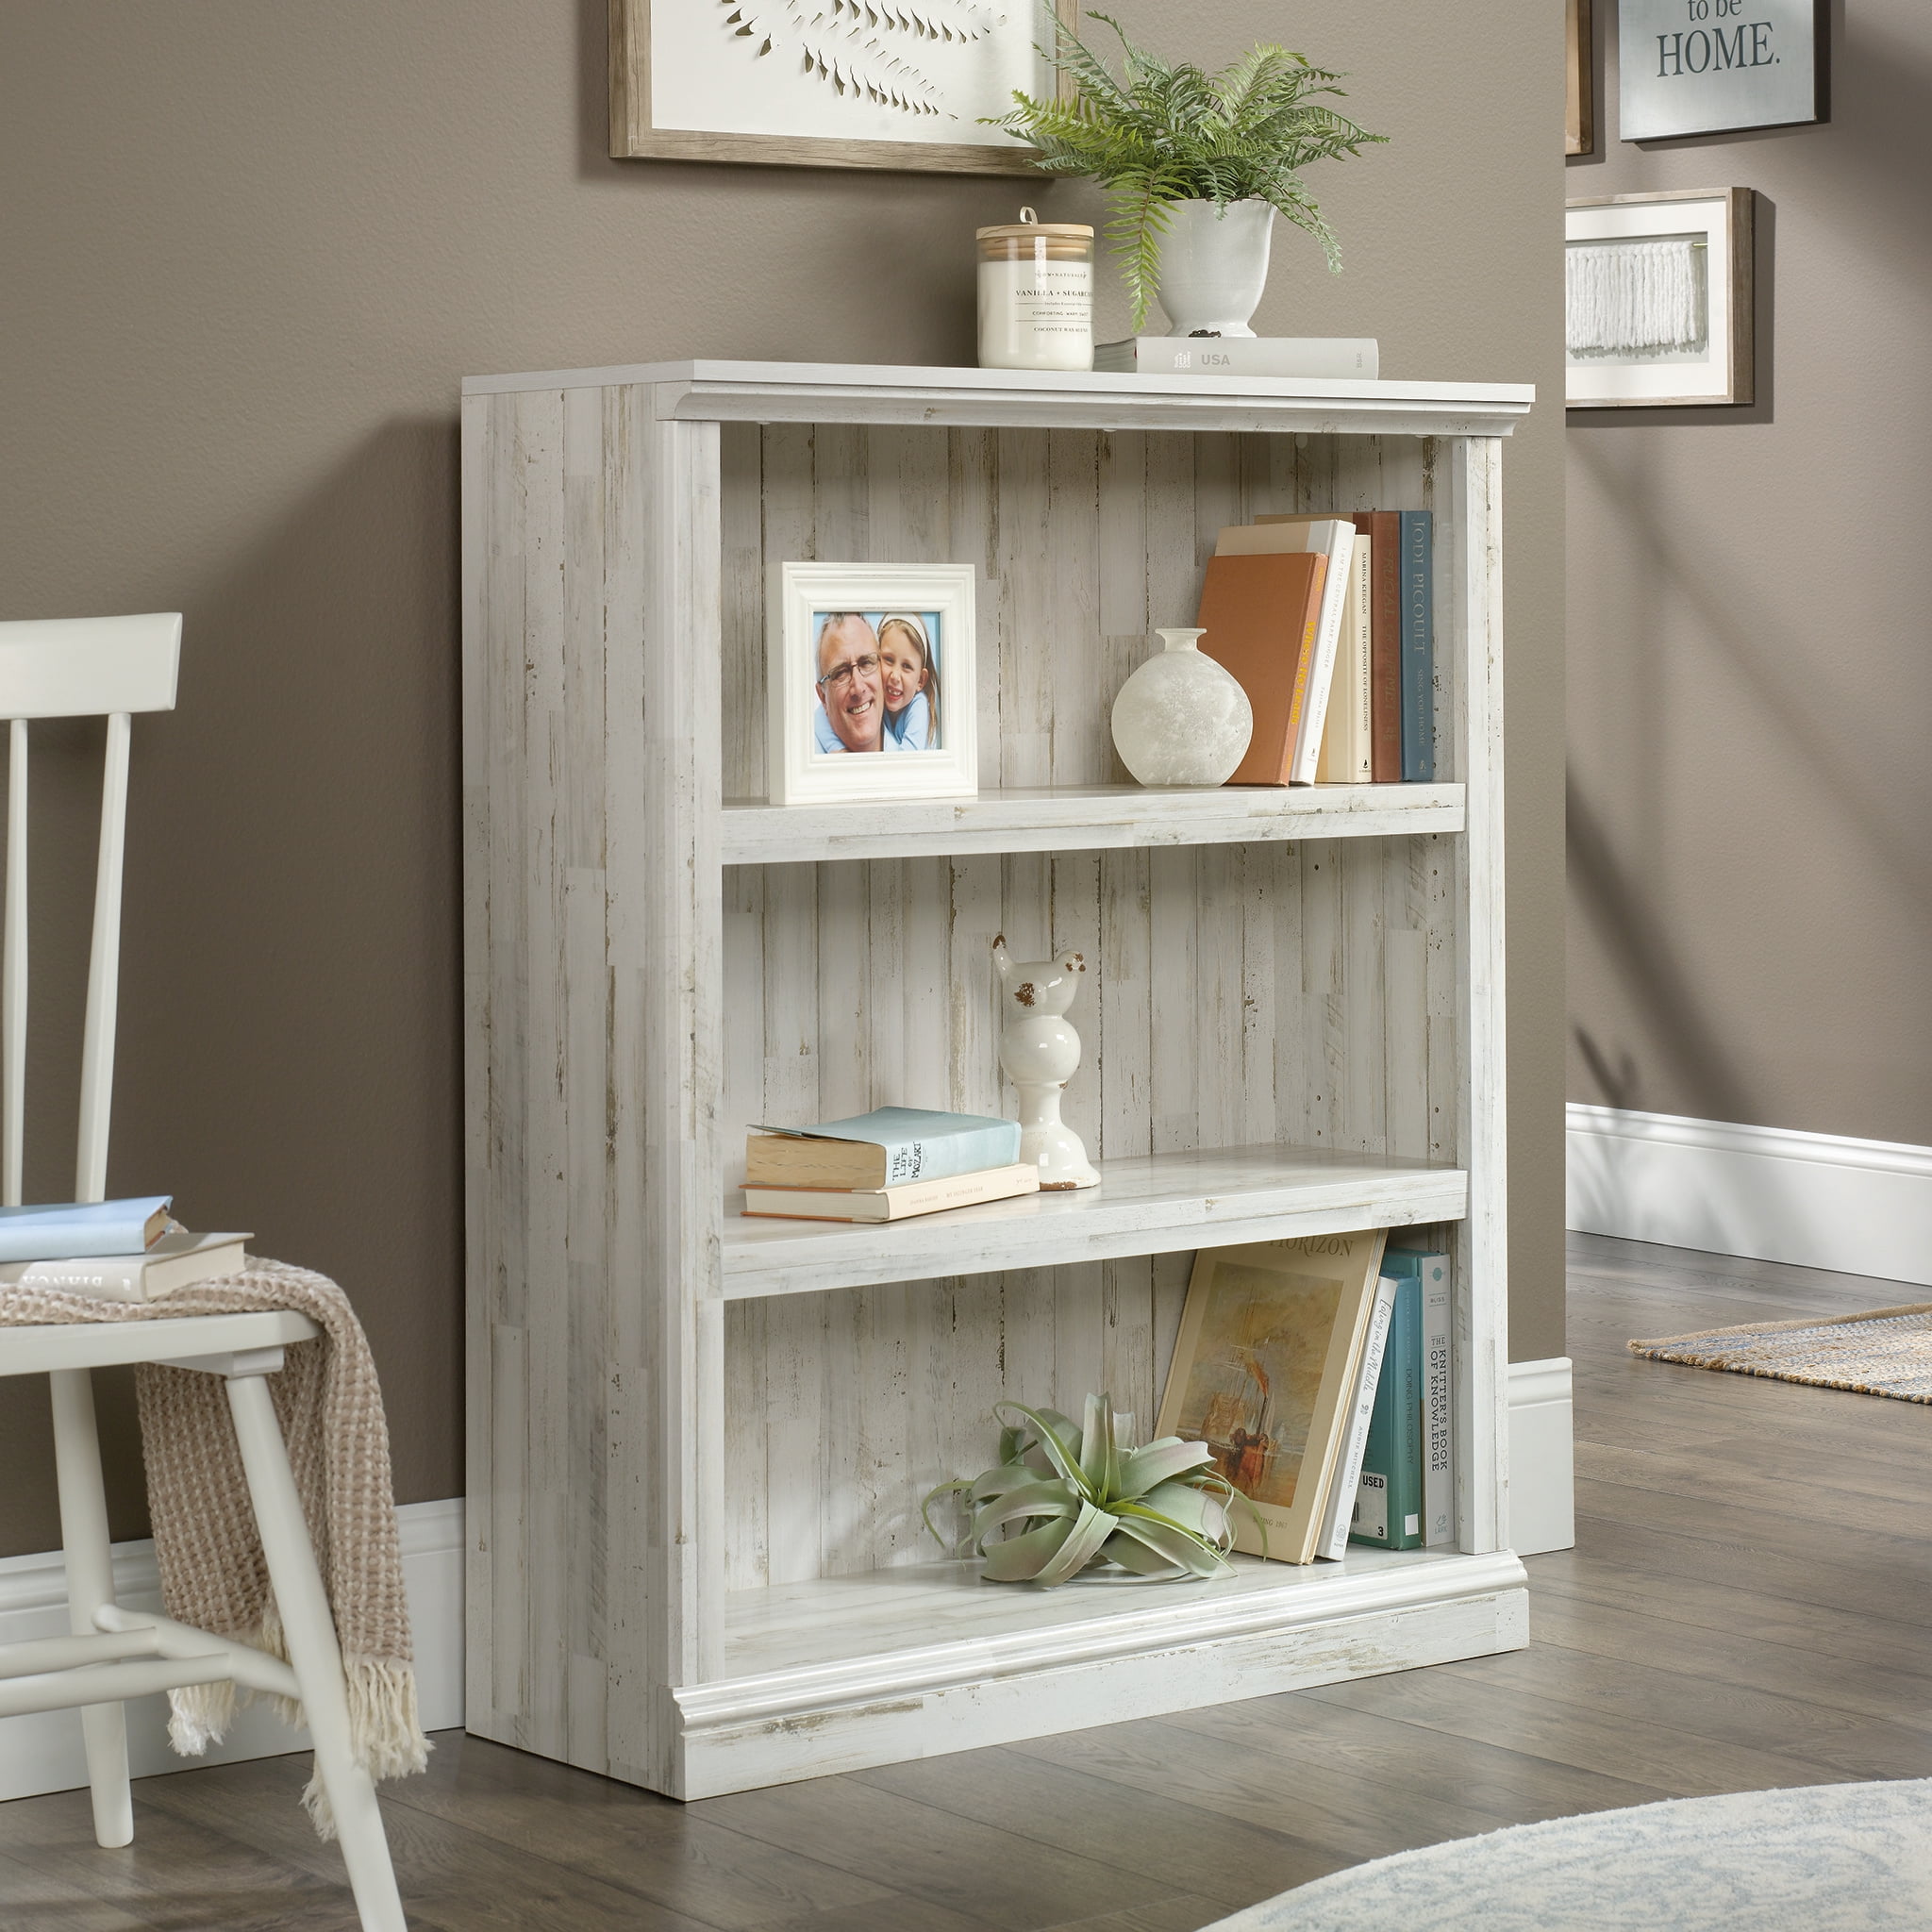 Sauder Select 3 Shelf Bookcase White Plank, Sauder 3 Shelf Bookcase Instructions